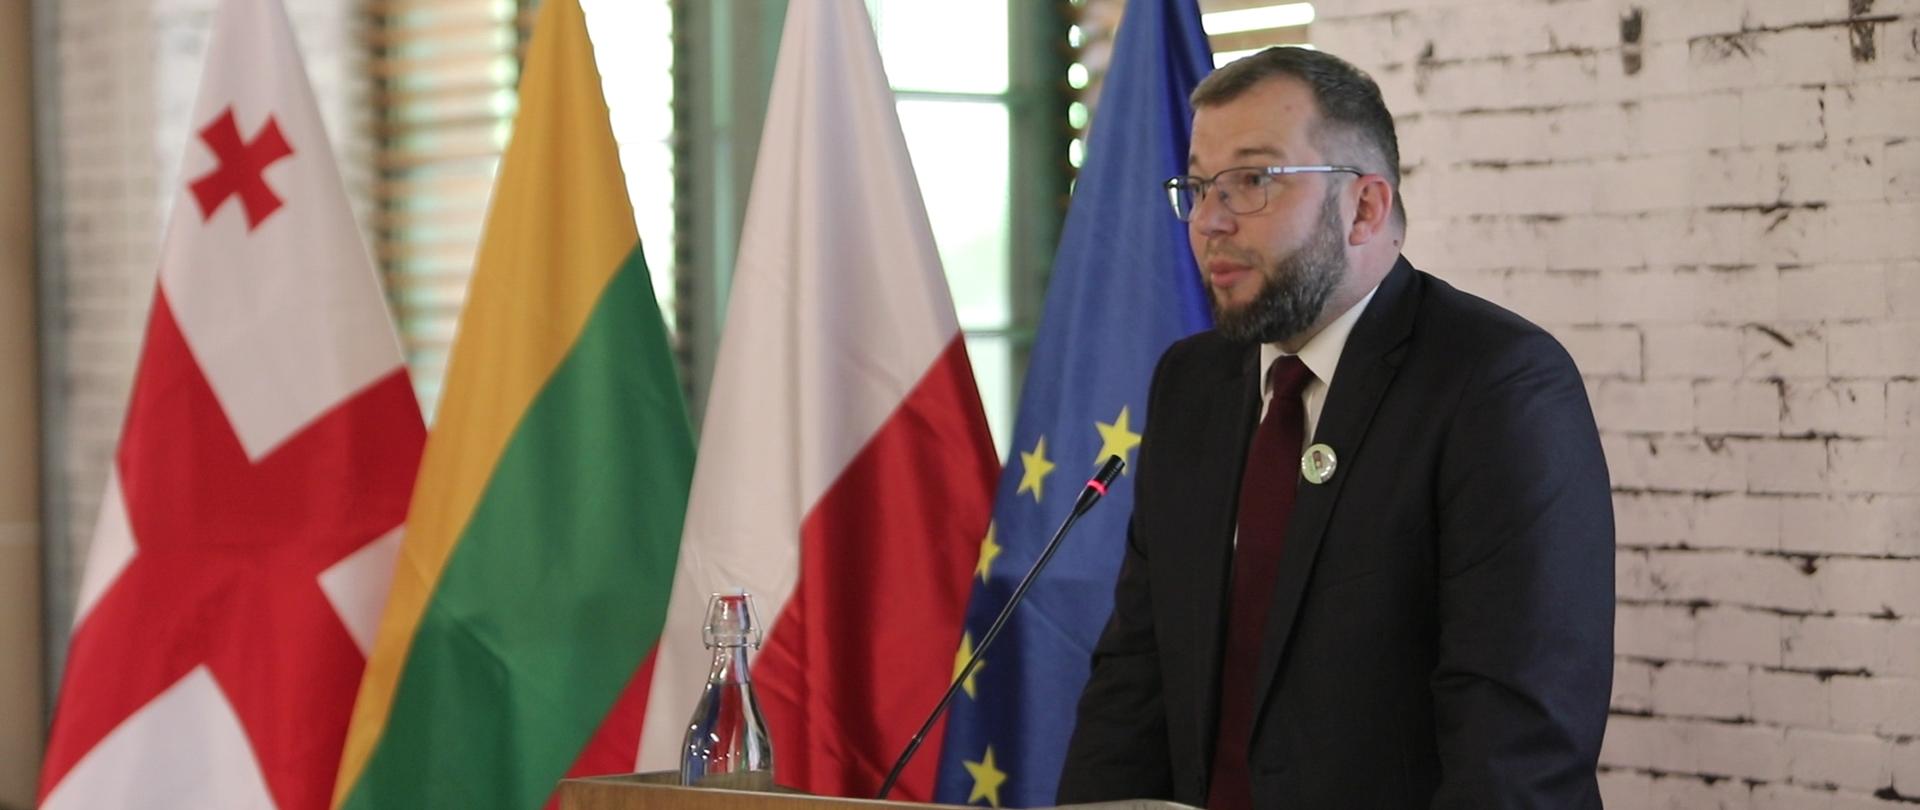 Minister Grzegorz Puda podczas wystąpienia na konferencji, w tle flagi m.in. Polski, Unii Europejskiej, Gruzji